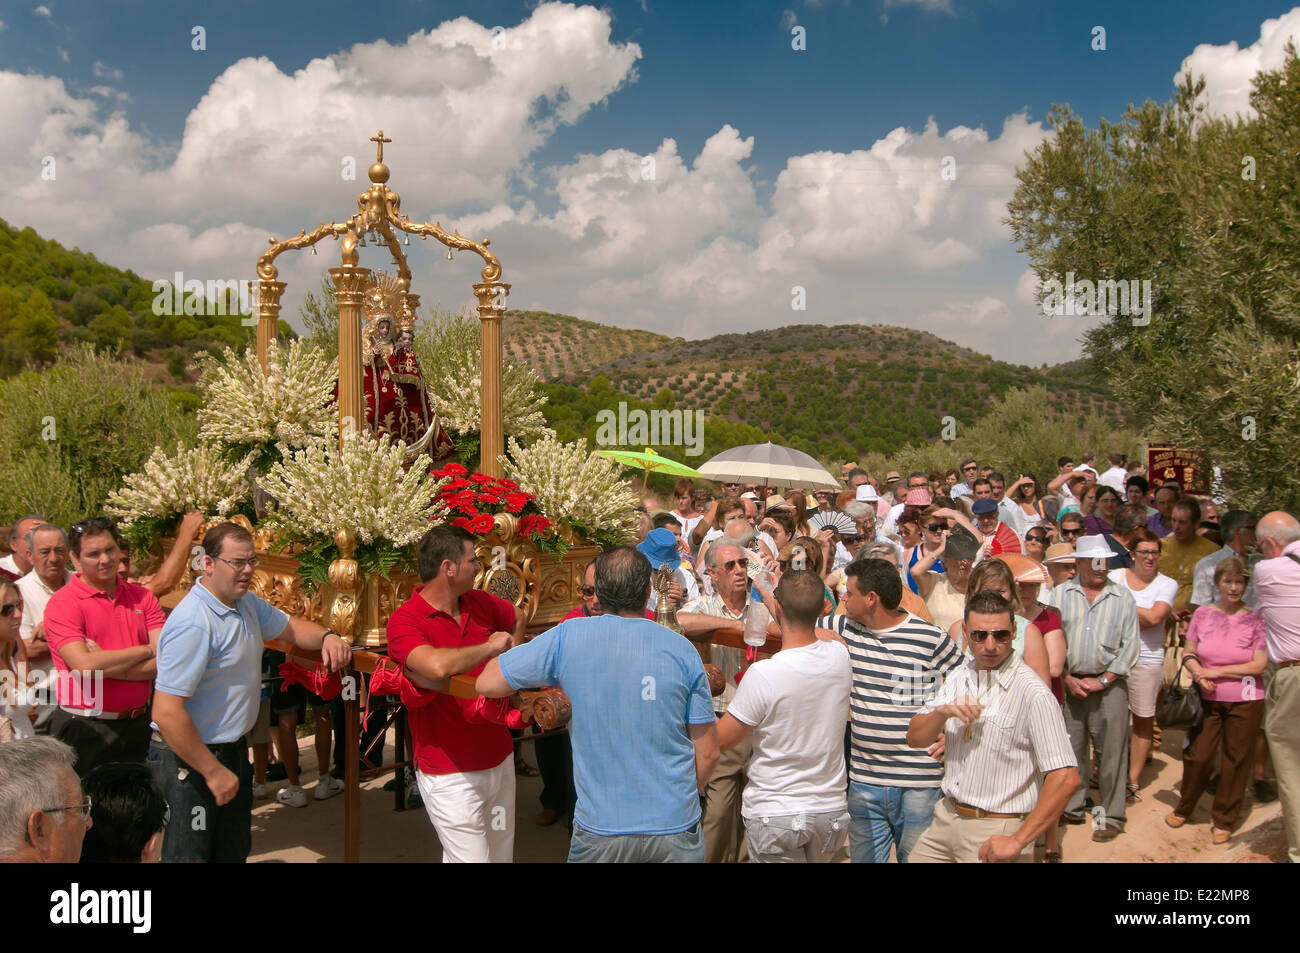 Pélerinage Virgen de la Fuensanta, la route touristique des bandits, corcoya, Séville province, région d'Andalousie, Espagne, Europe Banque D'Images